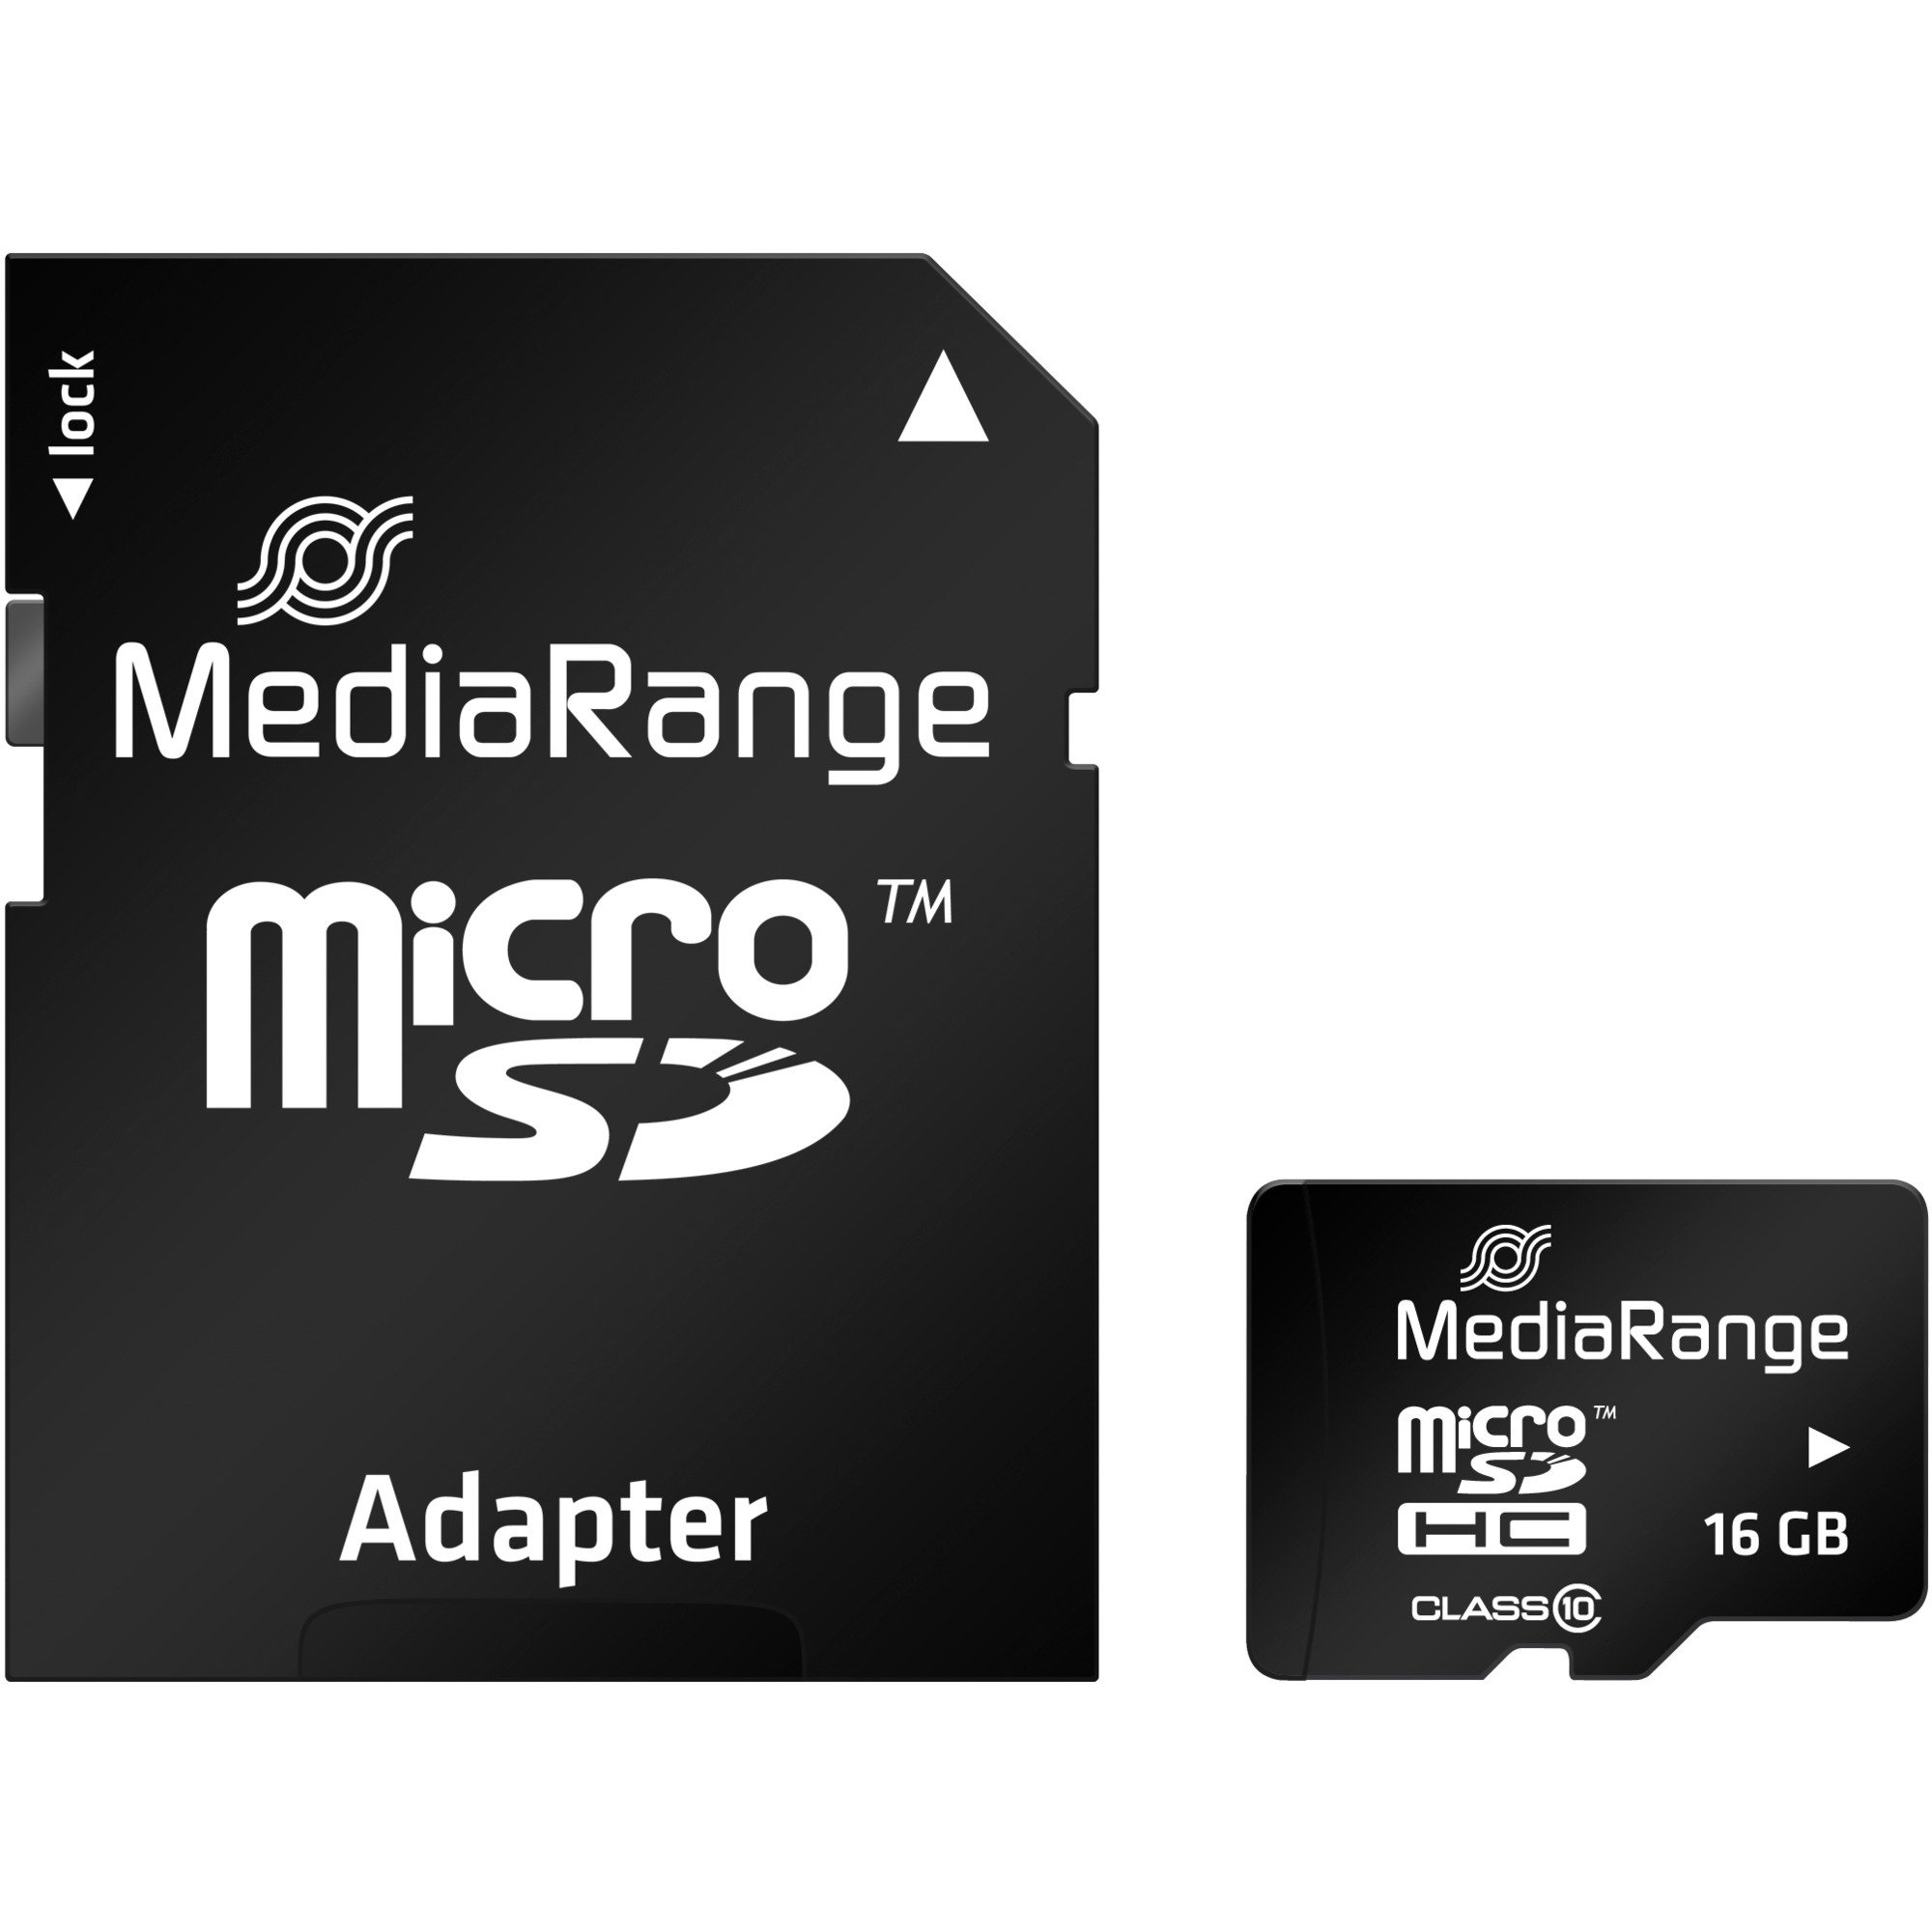 Image of Alternate - 16 GB microSDHC, Speicherkarte online einkaufen bei Alternate